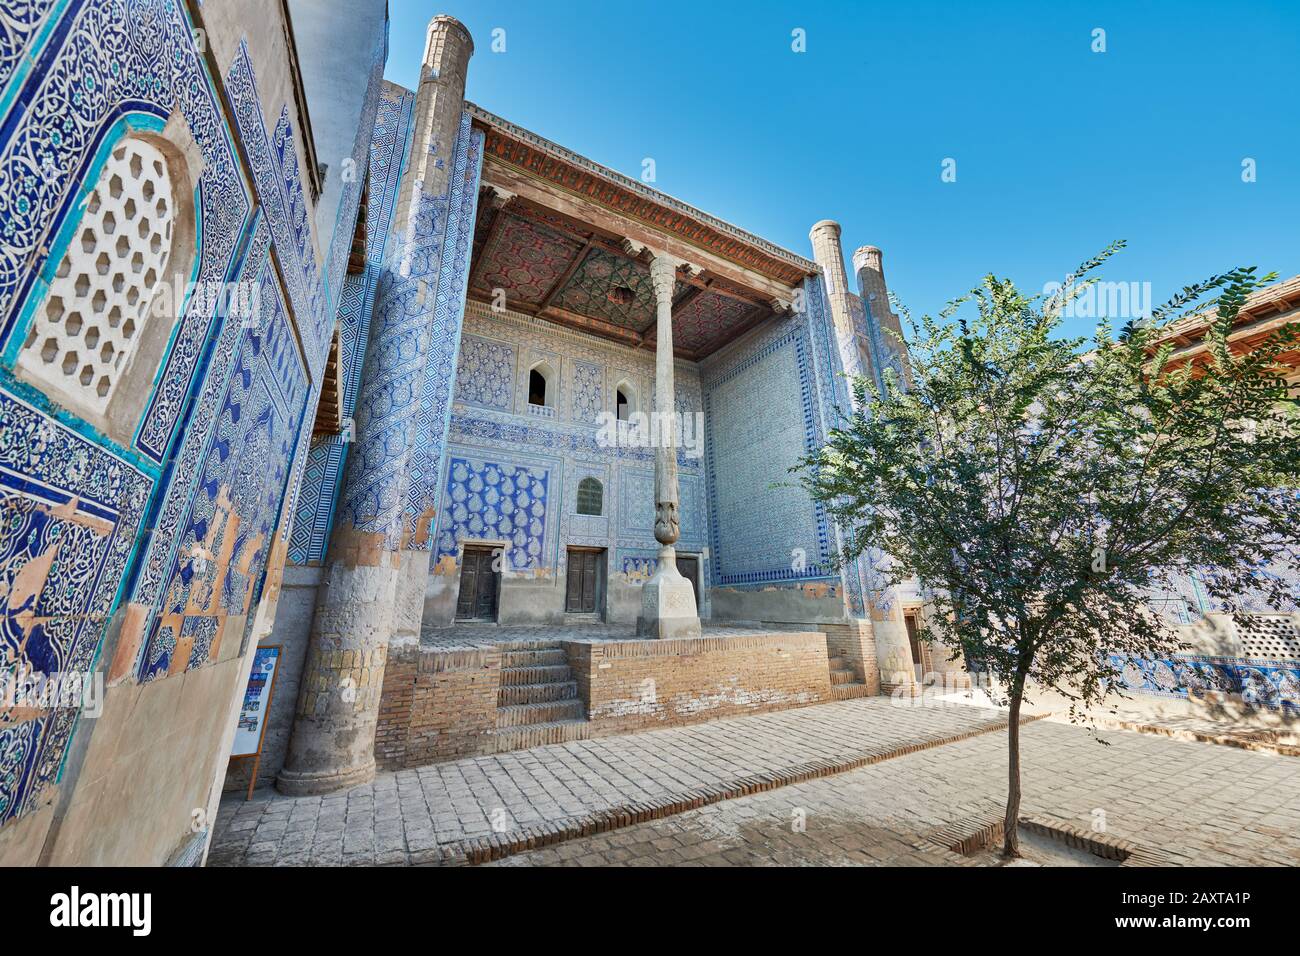 inner courtyard of Tash Khauli palace or Toshhovli, Itchan-Kala, Khiva, Uzbekistan, Central Asia, Stock Photo